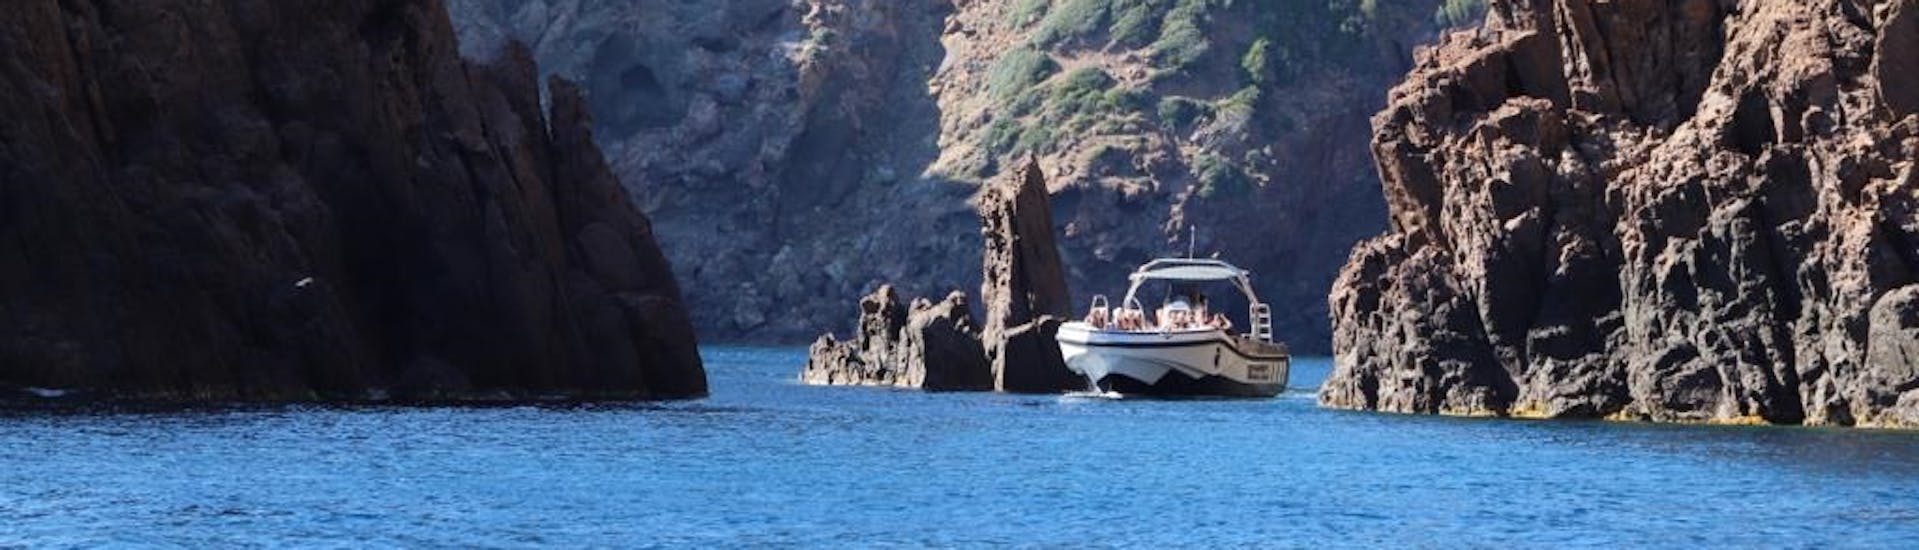 Bateau de Tra Mare e Monti pendant l'excursion en bateau privé à Scandola avec snorkeling  (bystellaphotography).